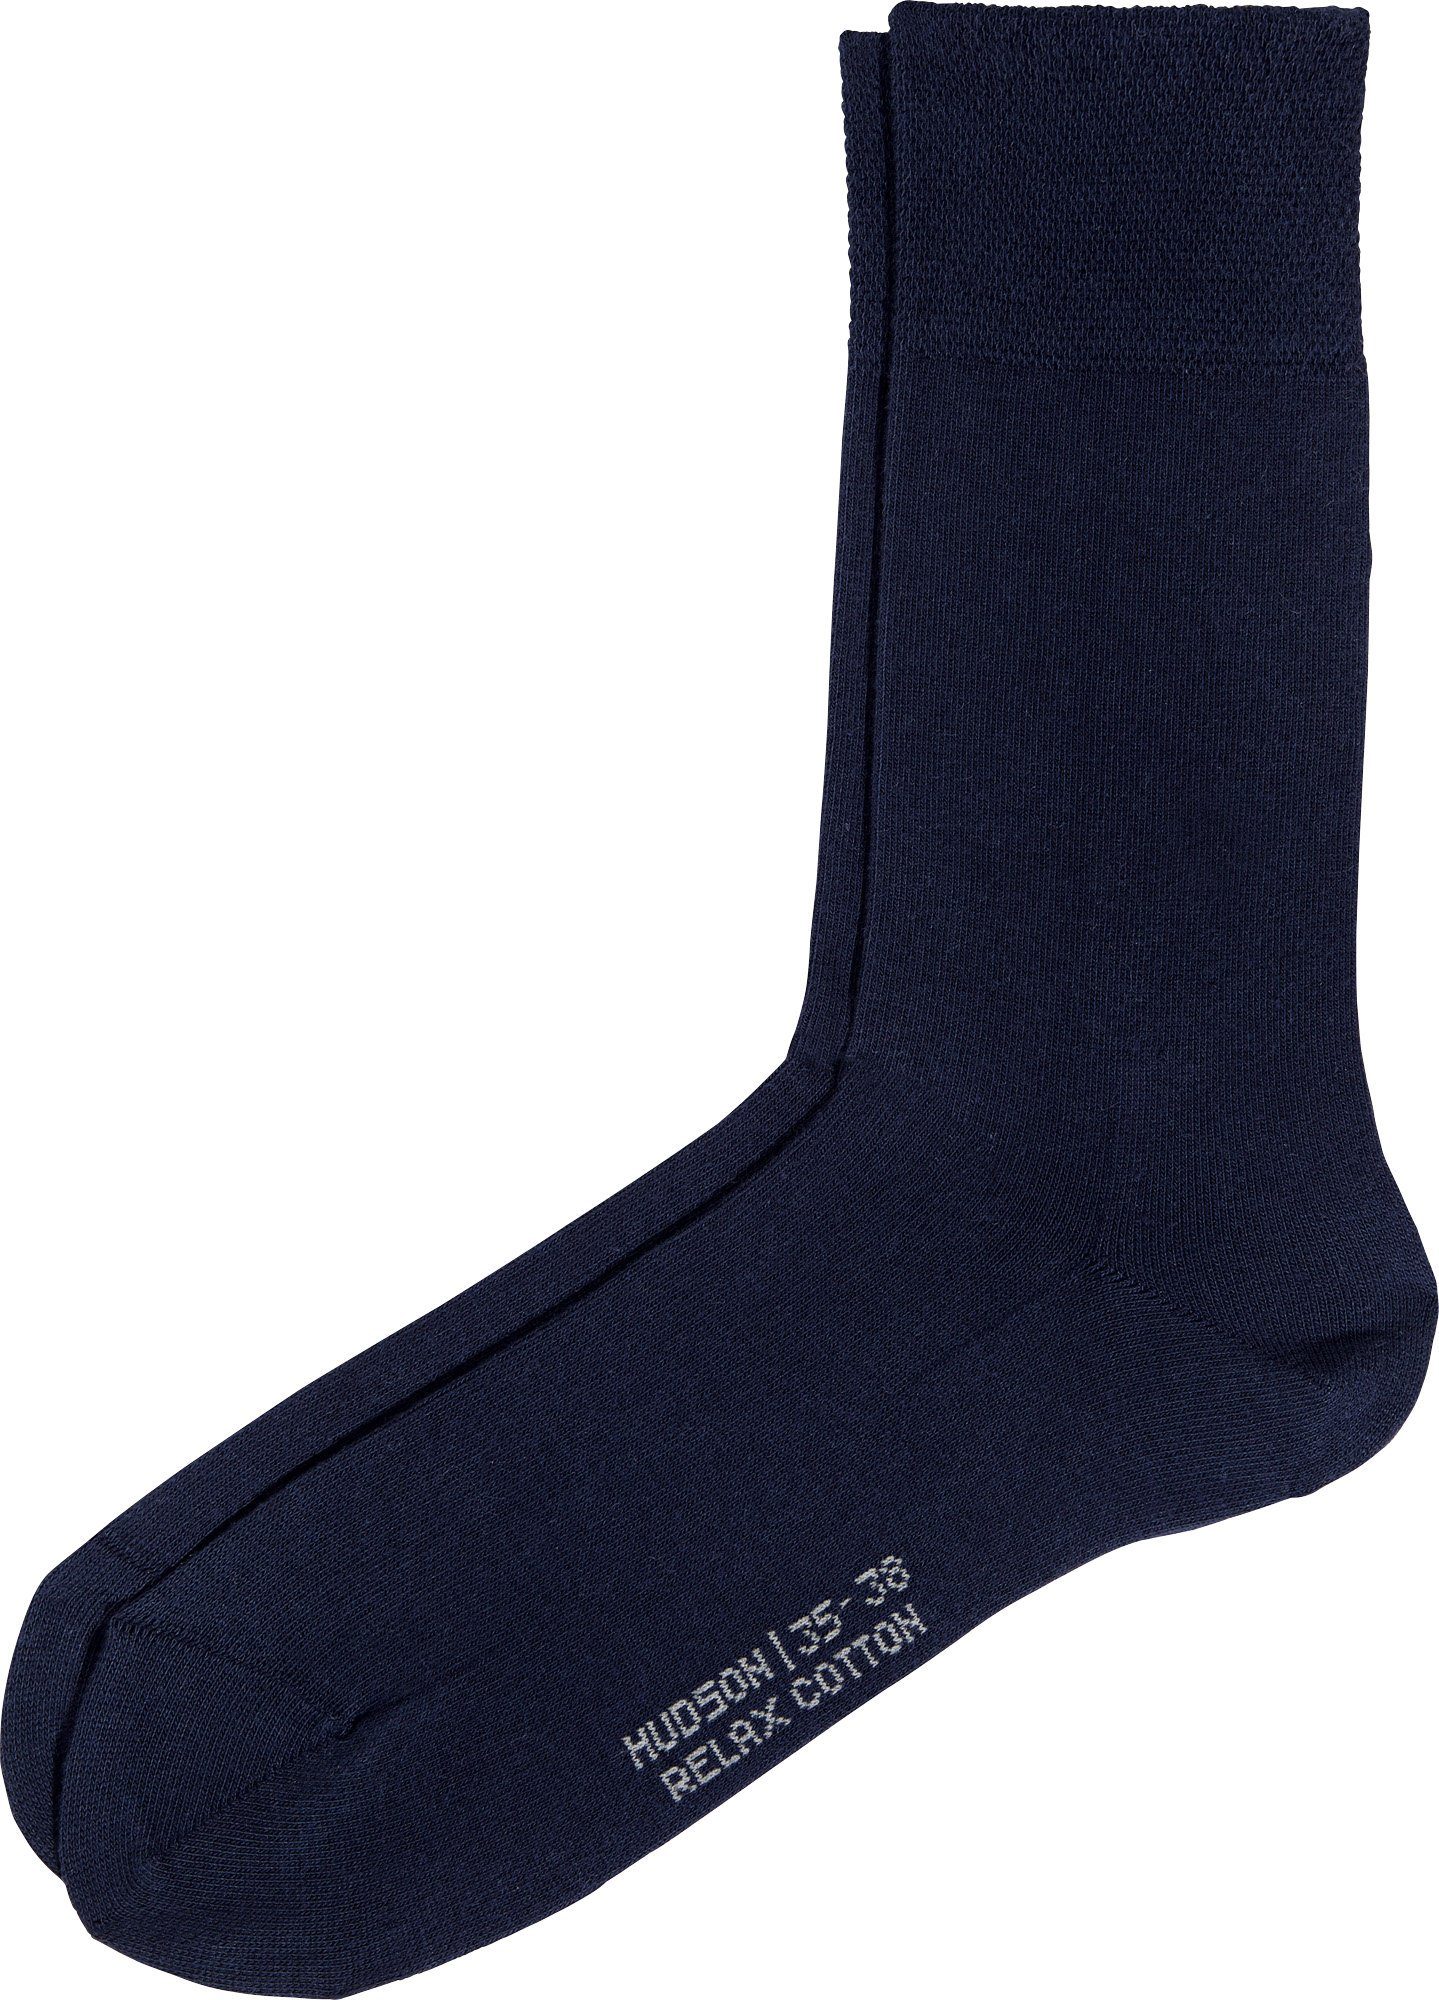 Hudson Socken Damen-Socken 1 Paar mit Softbund Uni marine